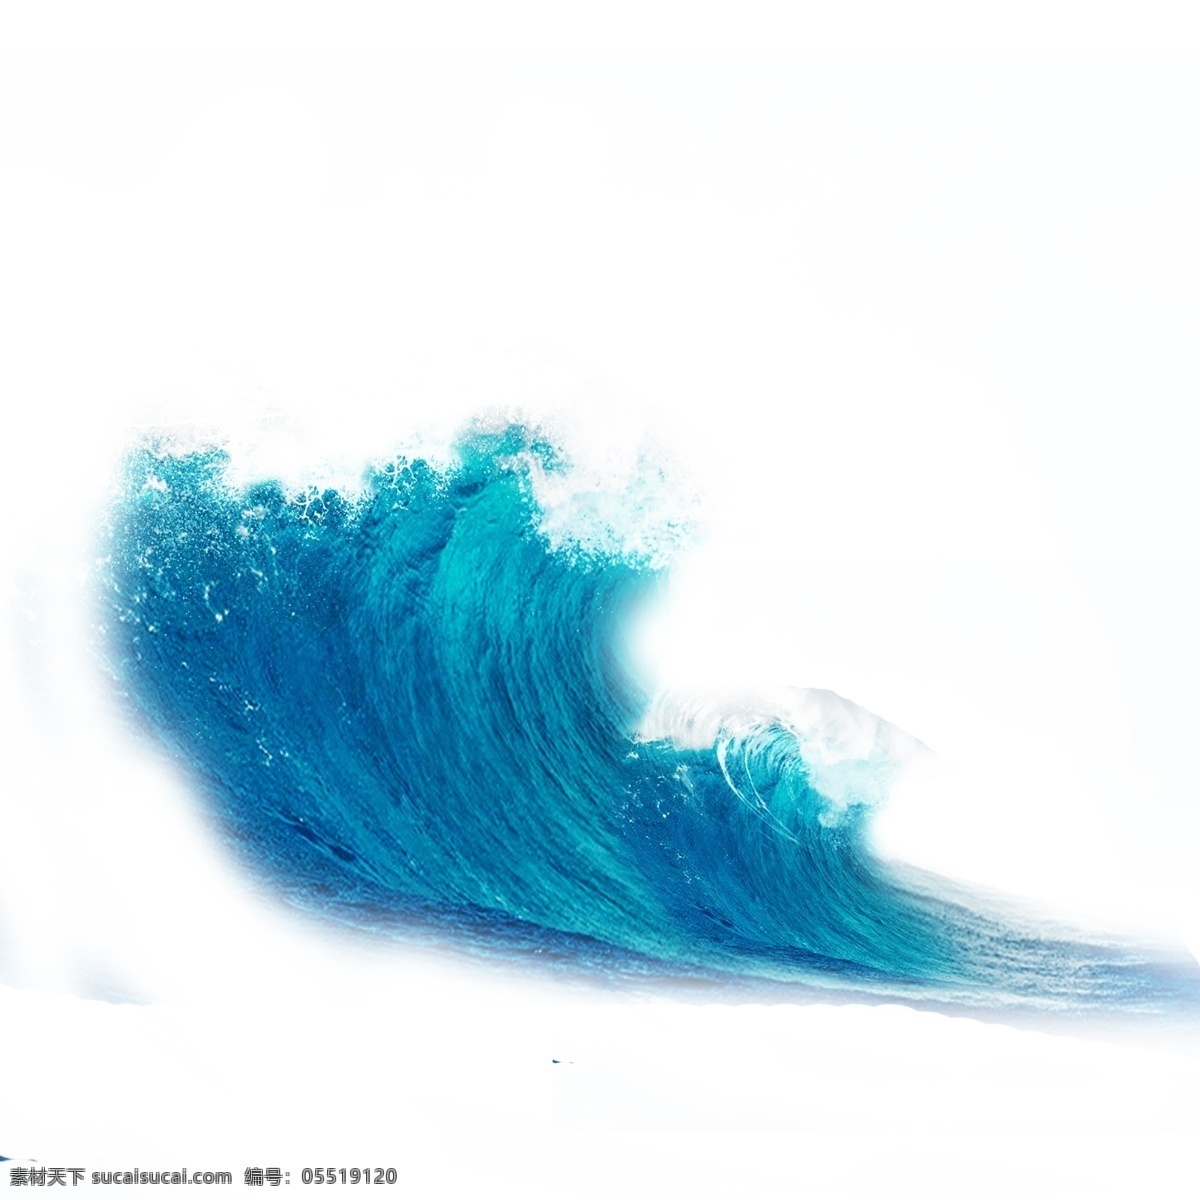 海面 蓝色 海浪 白色 浪花 元素 大海 水浪 波浪 效果 矢量 浪 海洋 装饰 白色浪花 雄伟 水效果 飞溅的浪花